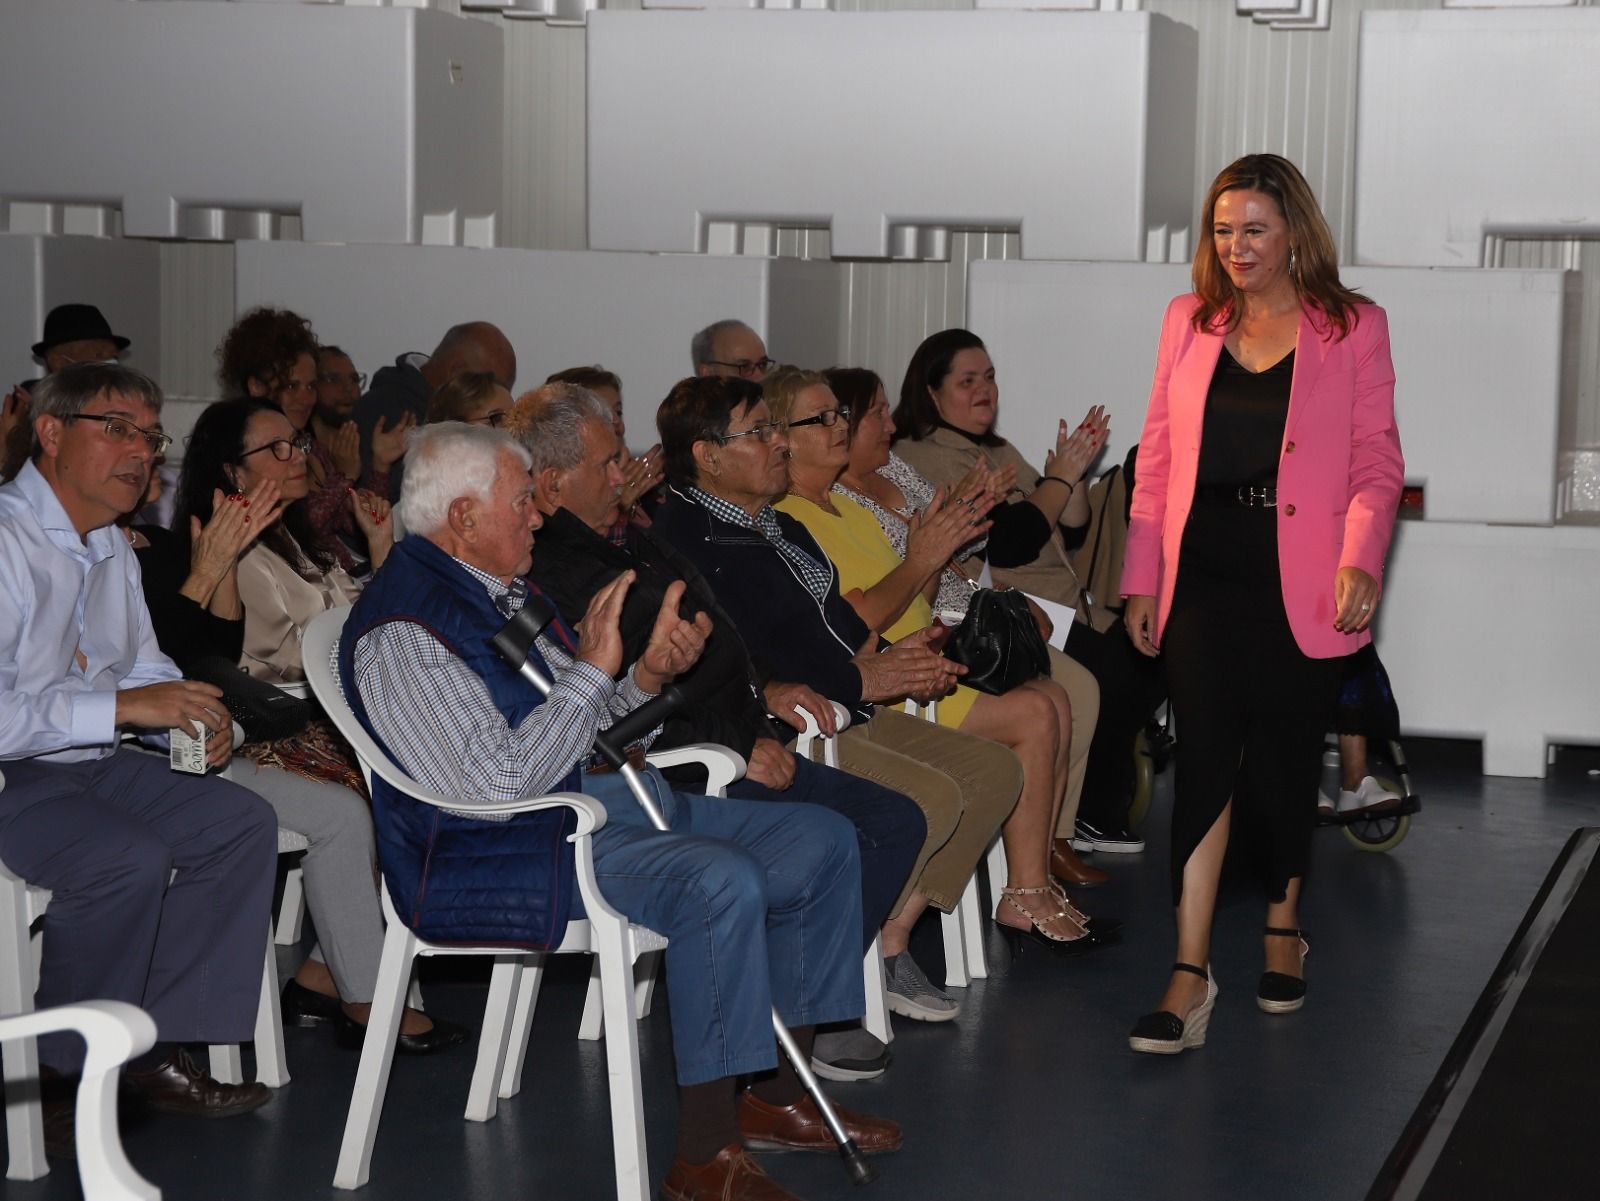 El Cabildo de Lanzarote pone en valor el papel de las mujeres de la industria conservera